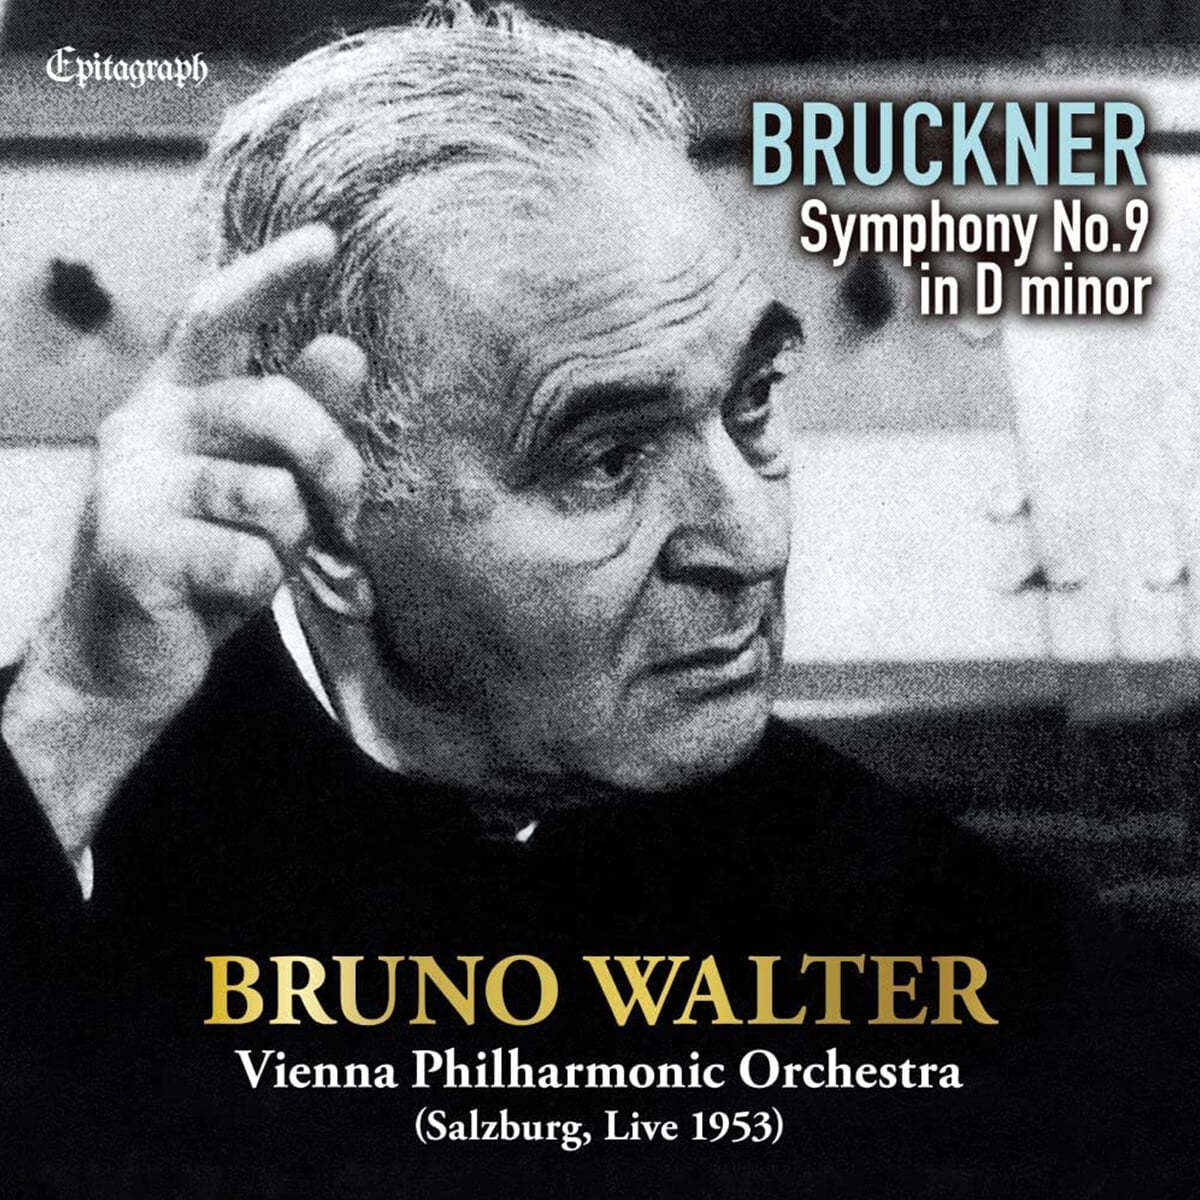 Bruno Walter 브루크너: 교향곡 9번 [원전판] - 브루노 발터 (Bruckner: Symphony No. 9)